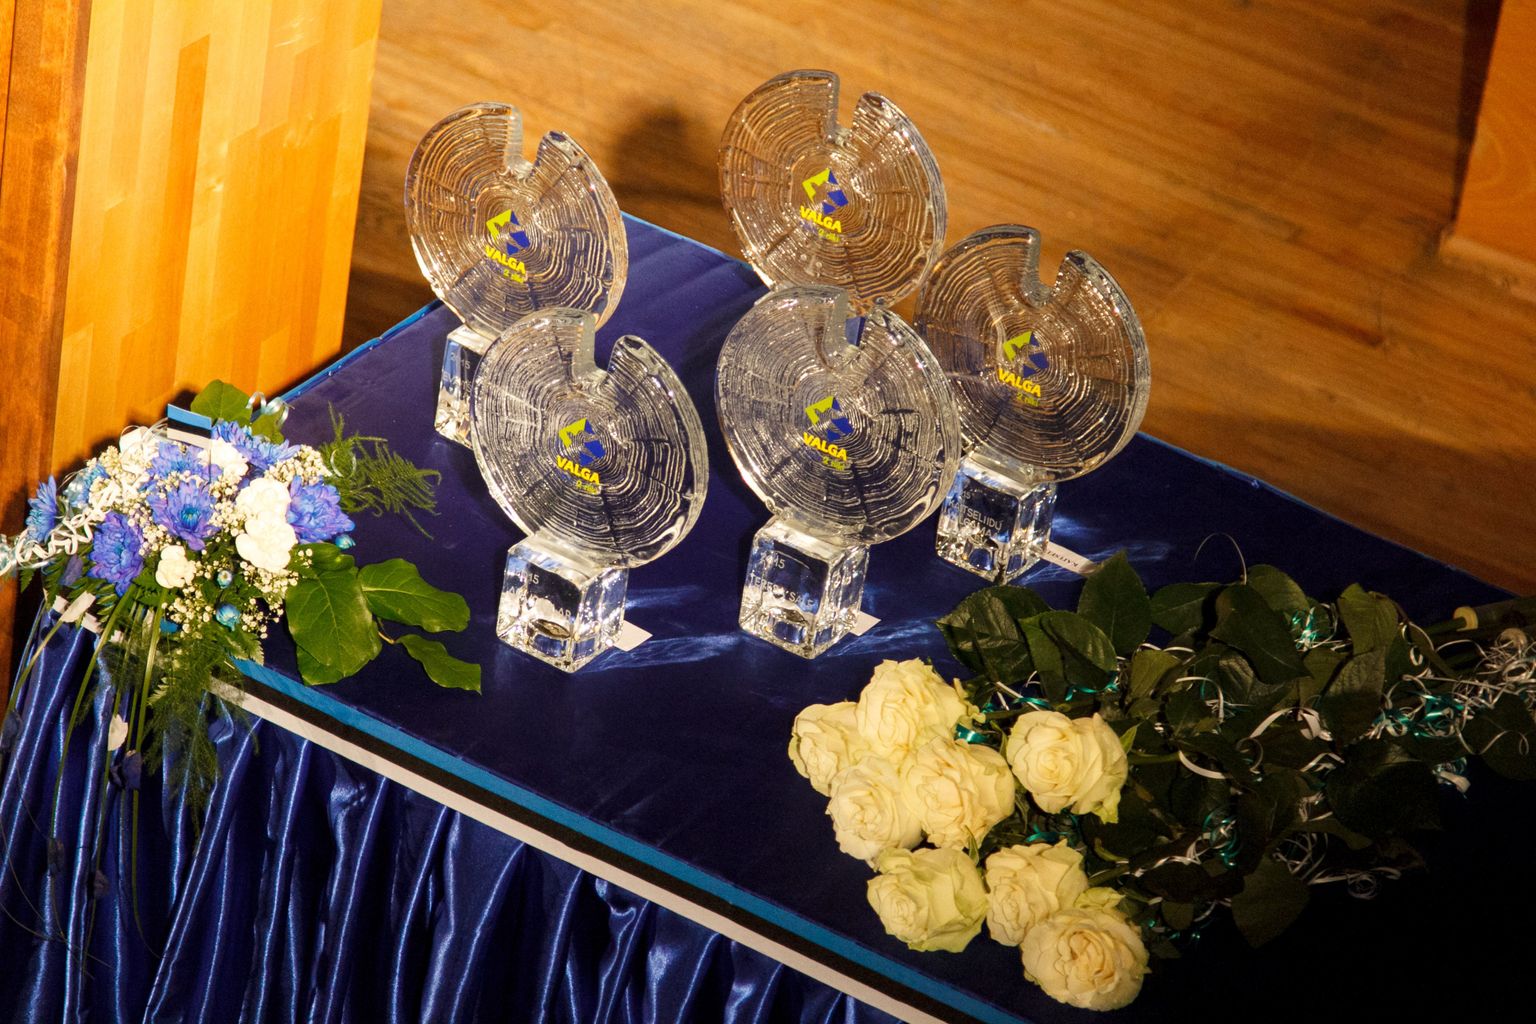 Valga linna aasta tegijatele anti üle eriilmelised auhinnad «Valga aastaring». Linna värvilist logot kandvad auhinnad on kavandanud ja valmistanud Eesti klaasikunstnik Eino Mäelt.